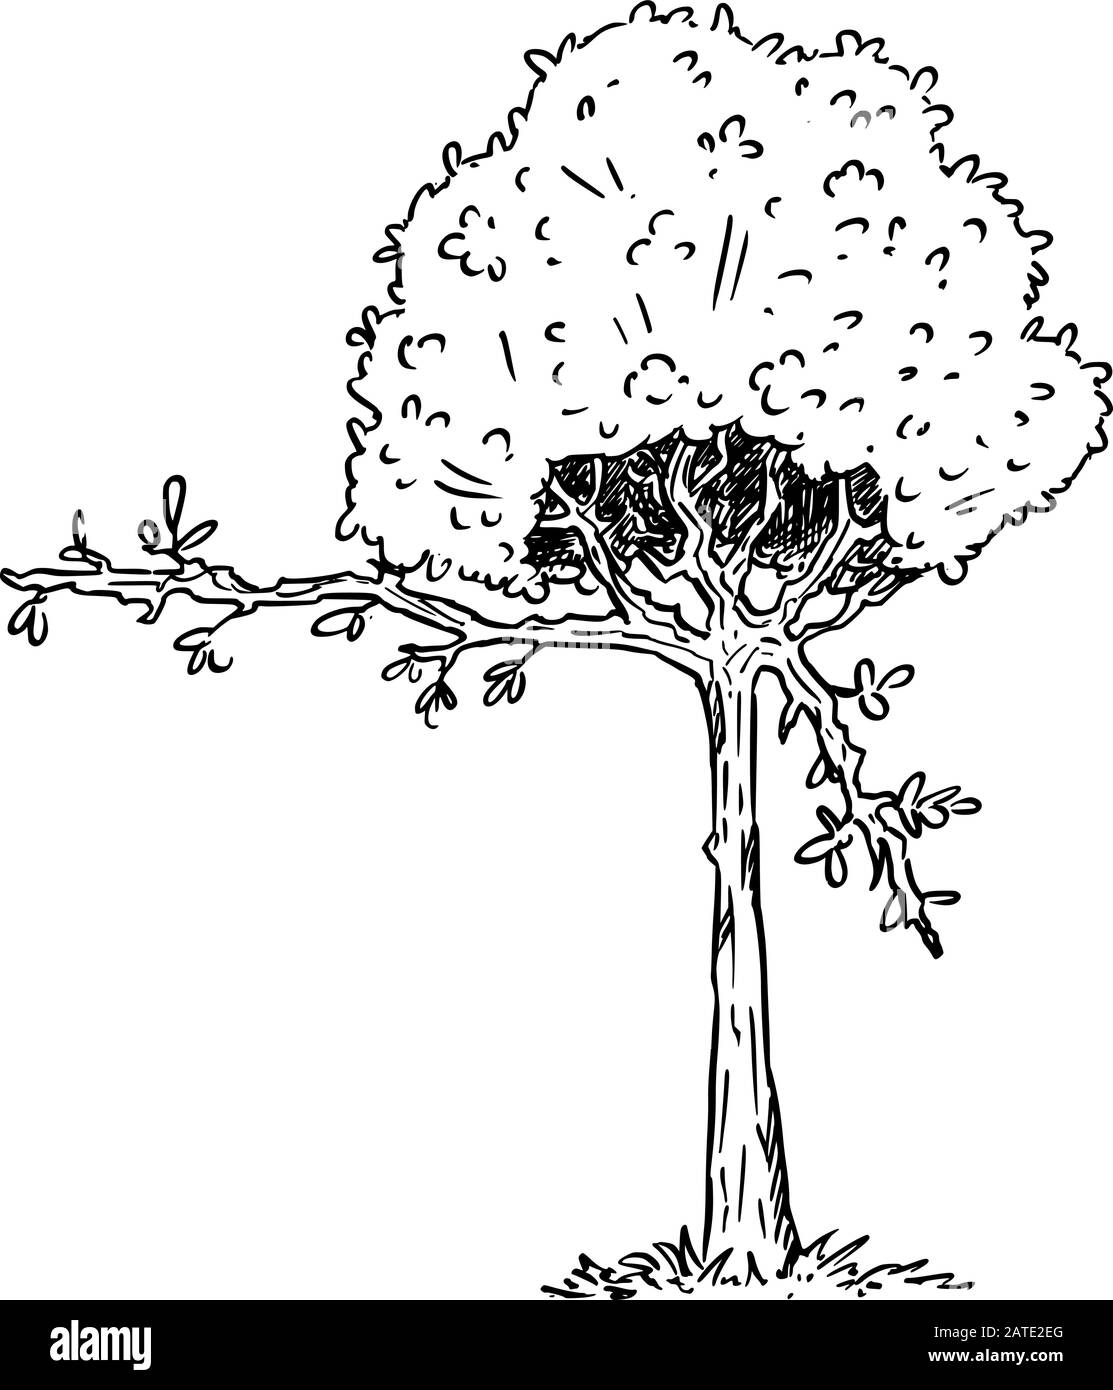 Illustration vectorielle du personnage de plante d'arbre à fleurs de dessin animé montrant ou pointant quelque chose par branche avec des feuilles. Publicité écologique ou de nature ou conception marketing. Illustration de Vecteur